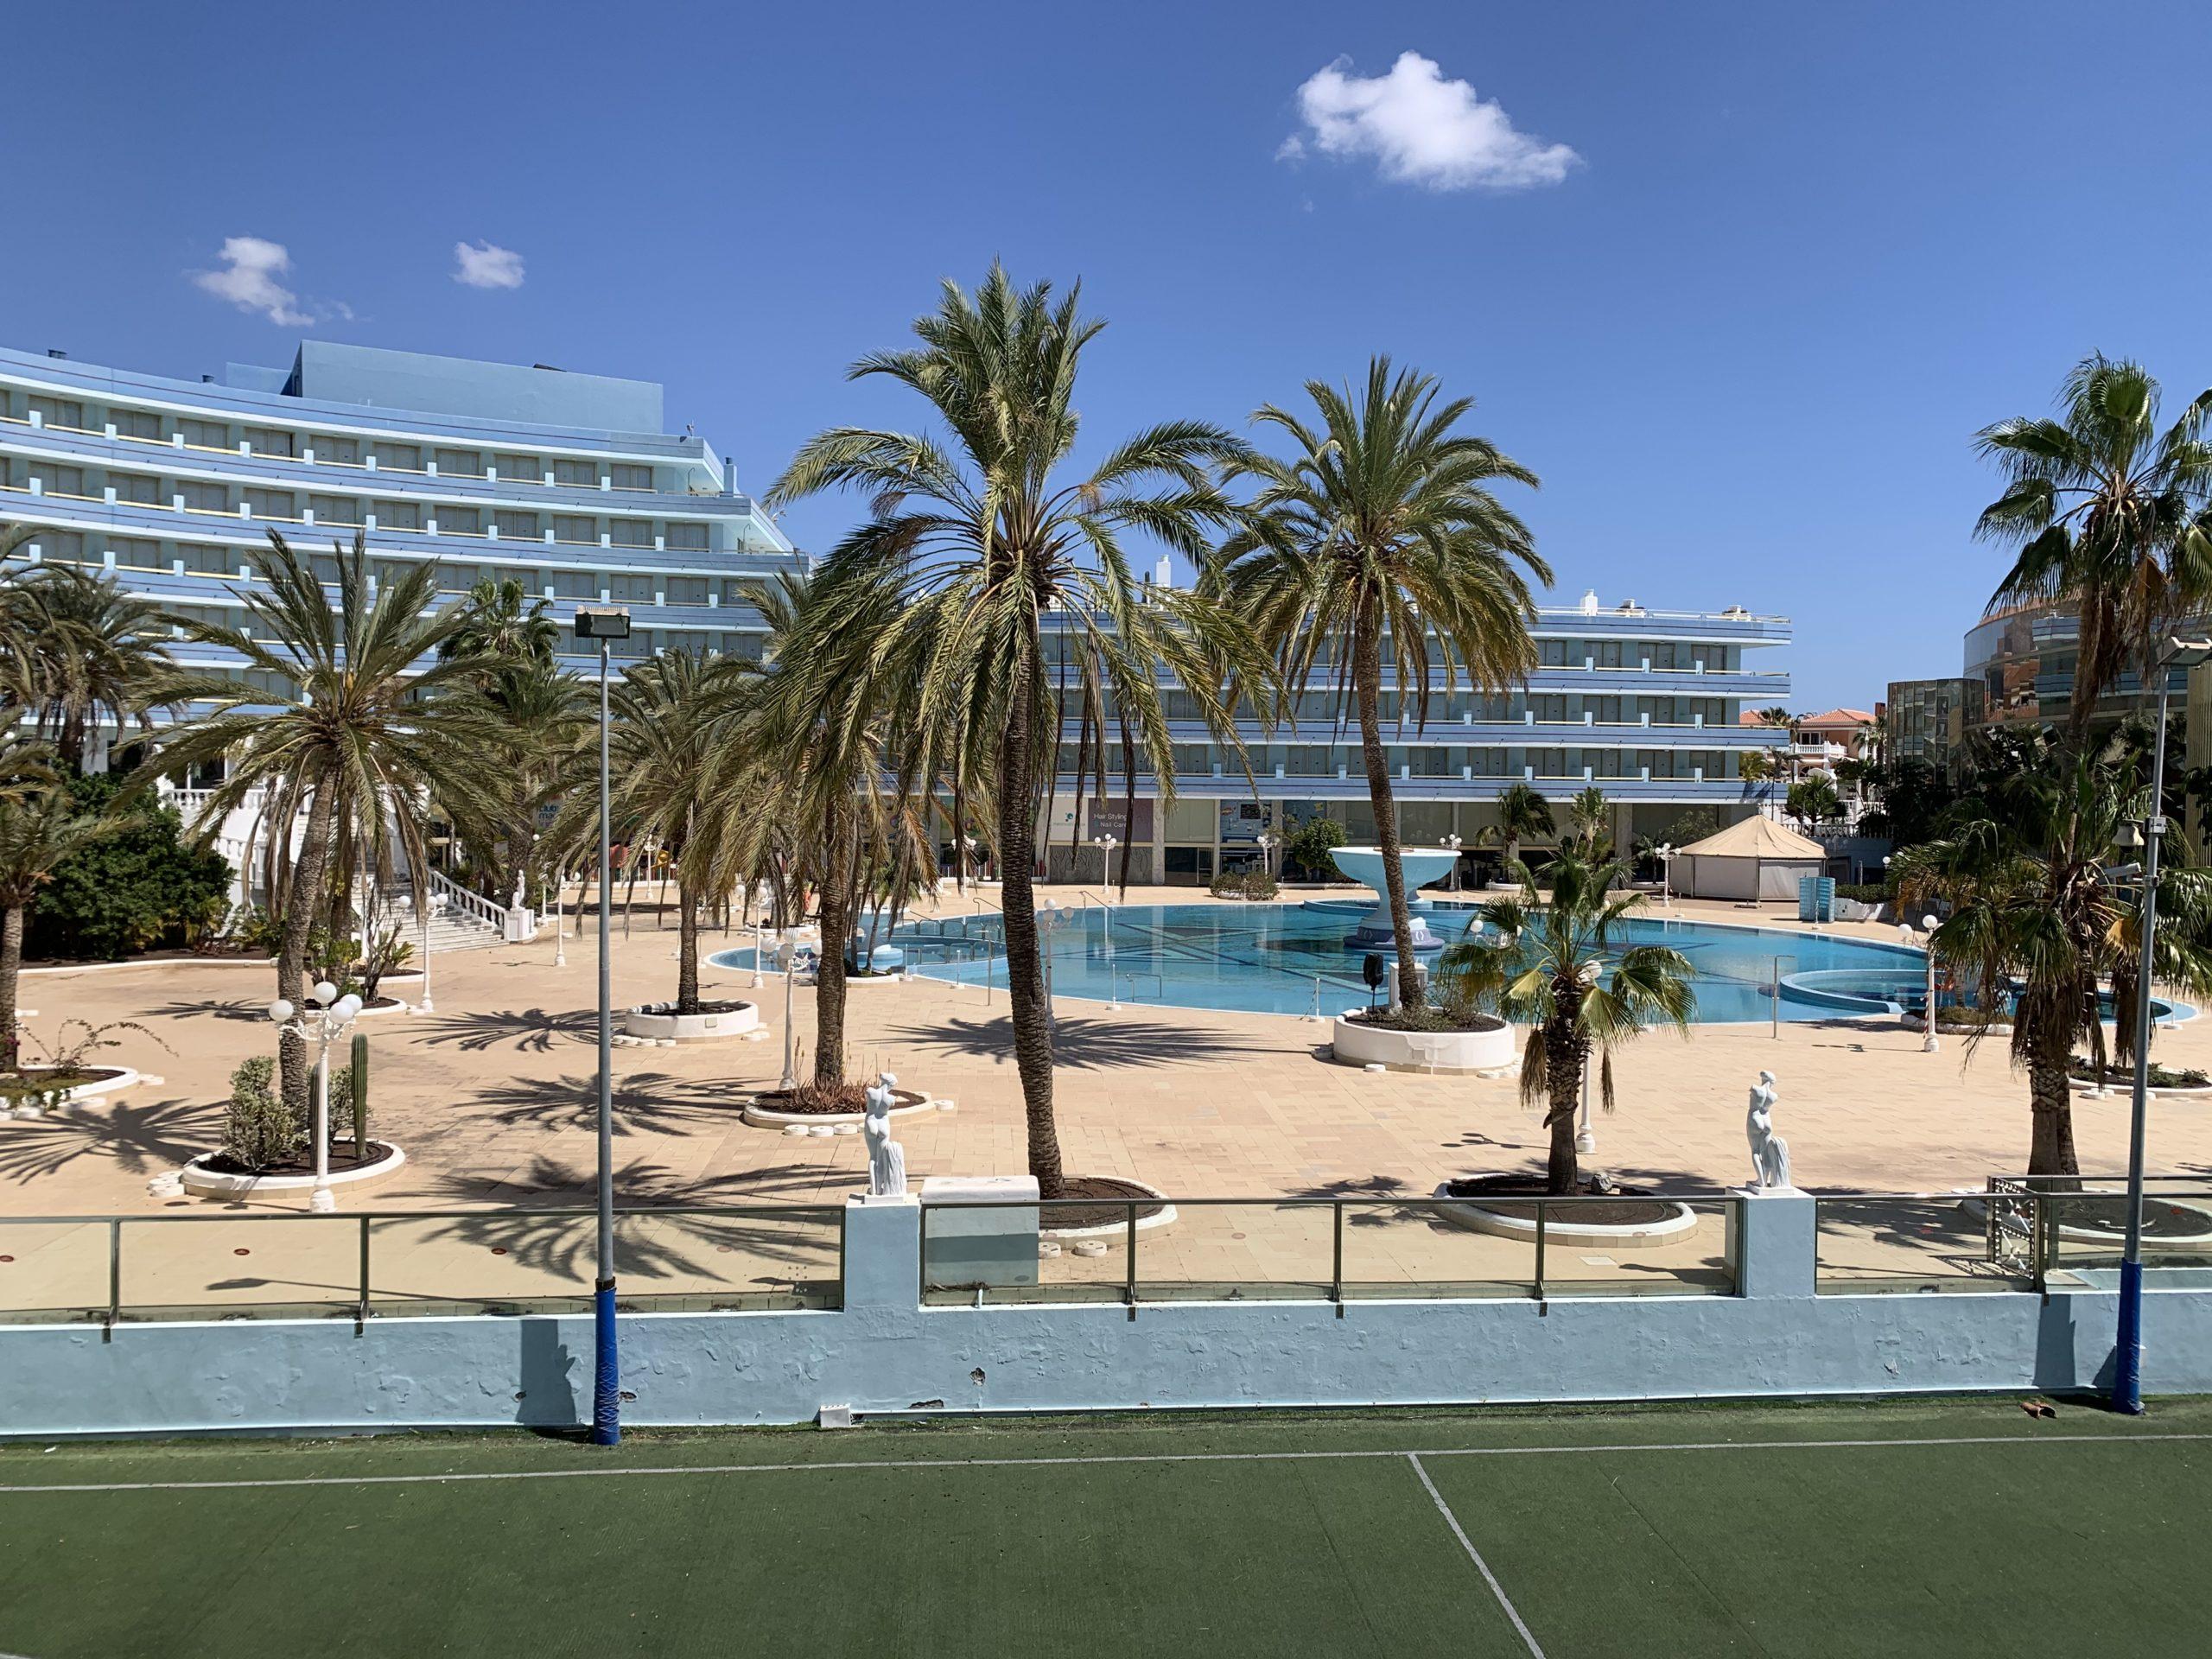 Ein großes mehrstöckiges Hotel mit Pool und Palmen auf Teneriffa